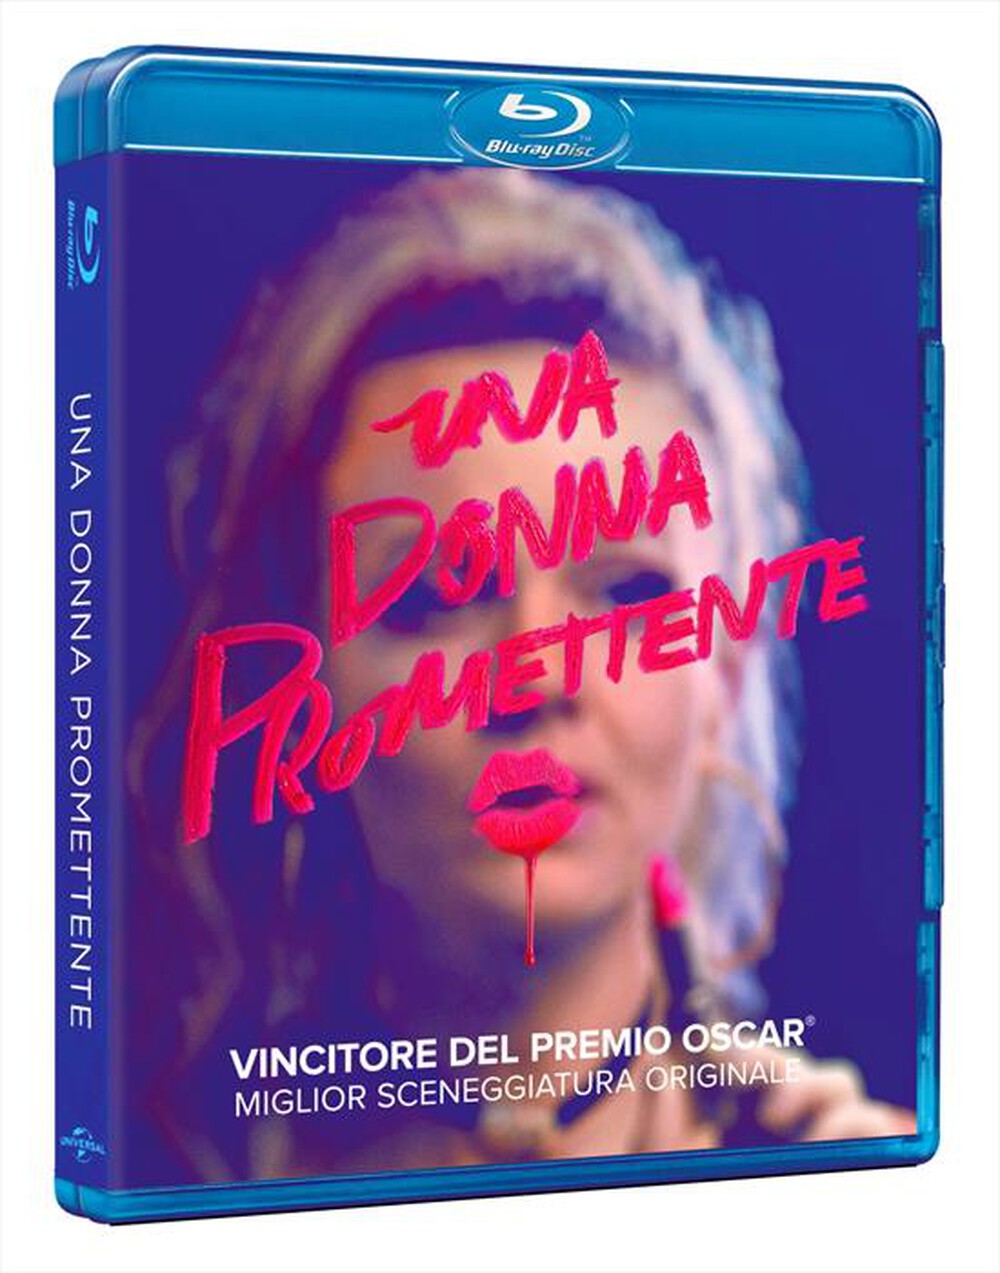 "UNIVERSAL PICTURES - Donna Promettente (Una)"